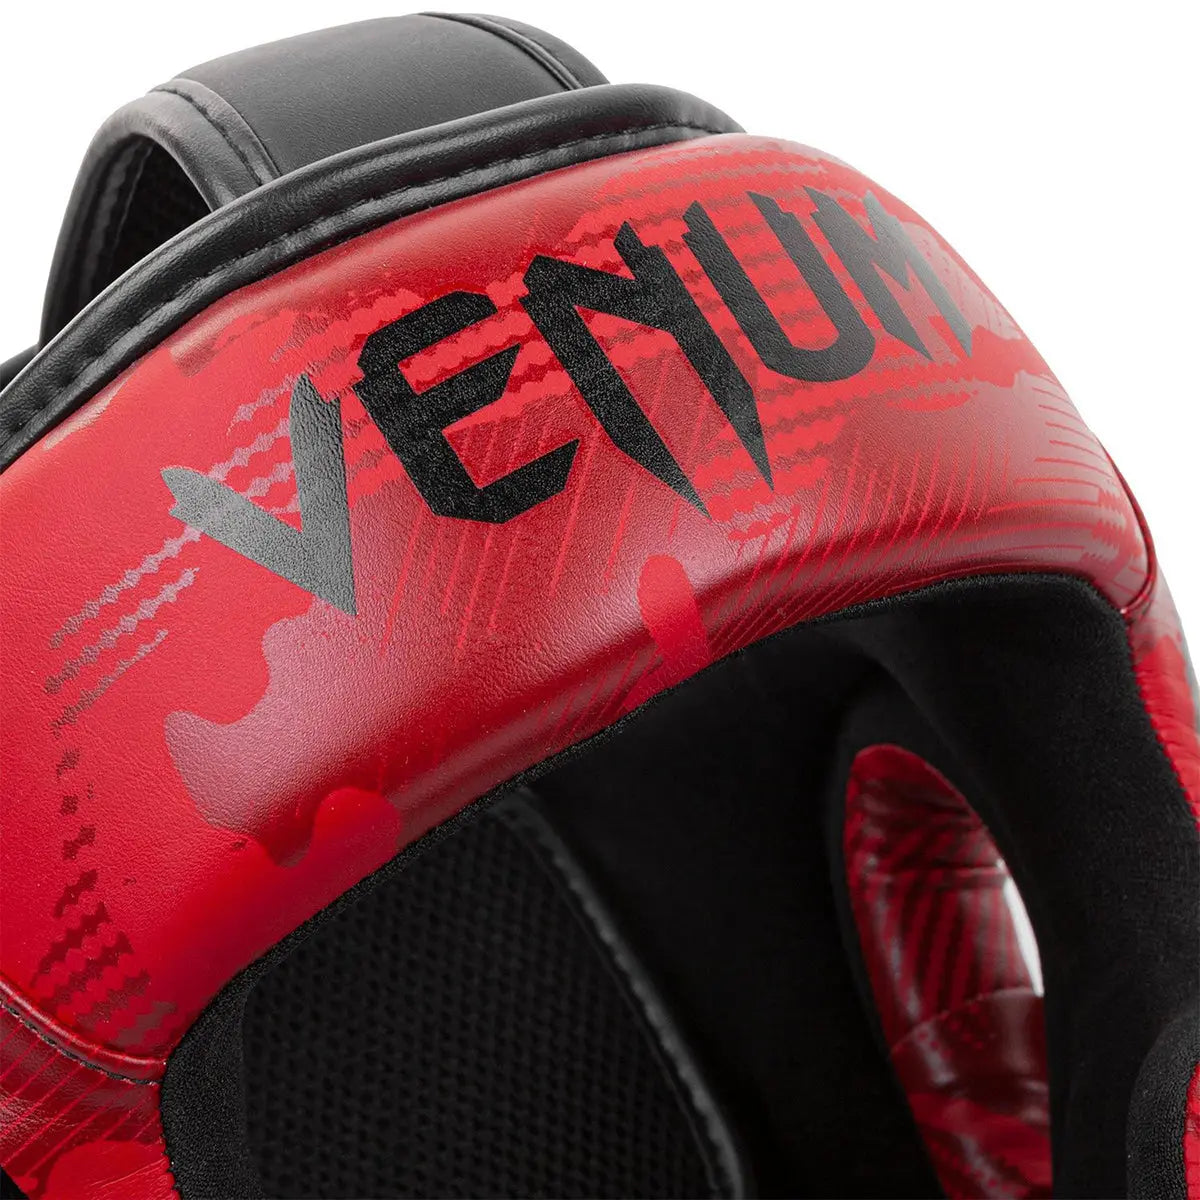 Venum Elite Boxing and MMA Protective Headgear